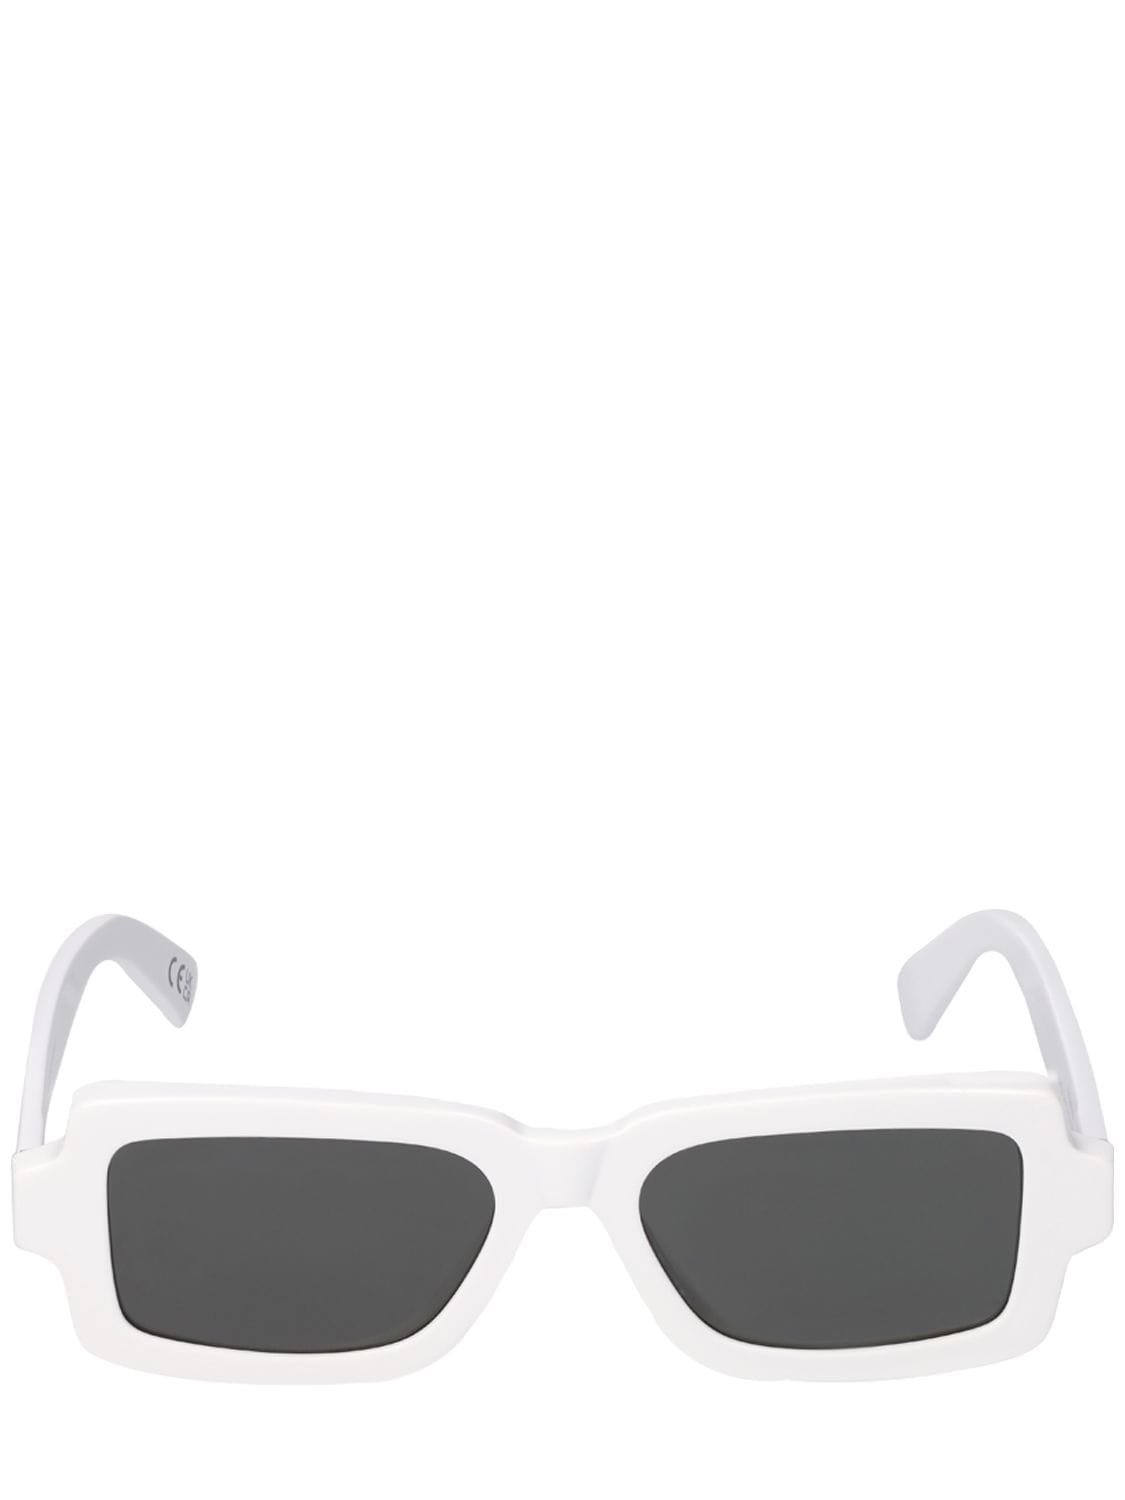 Image of Pilastro Acetate Sunglasses